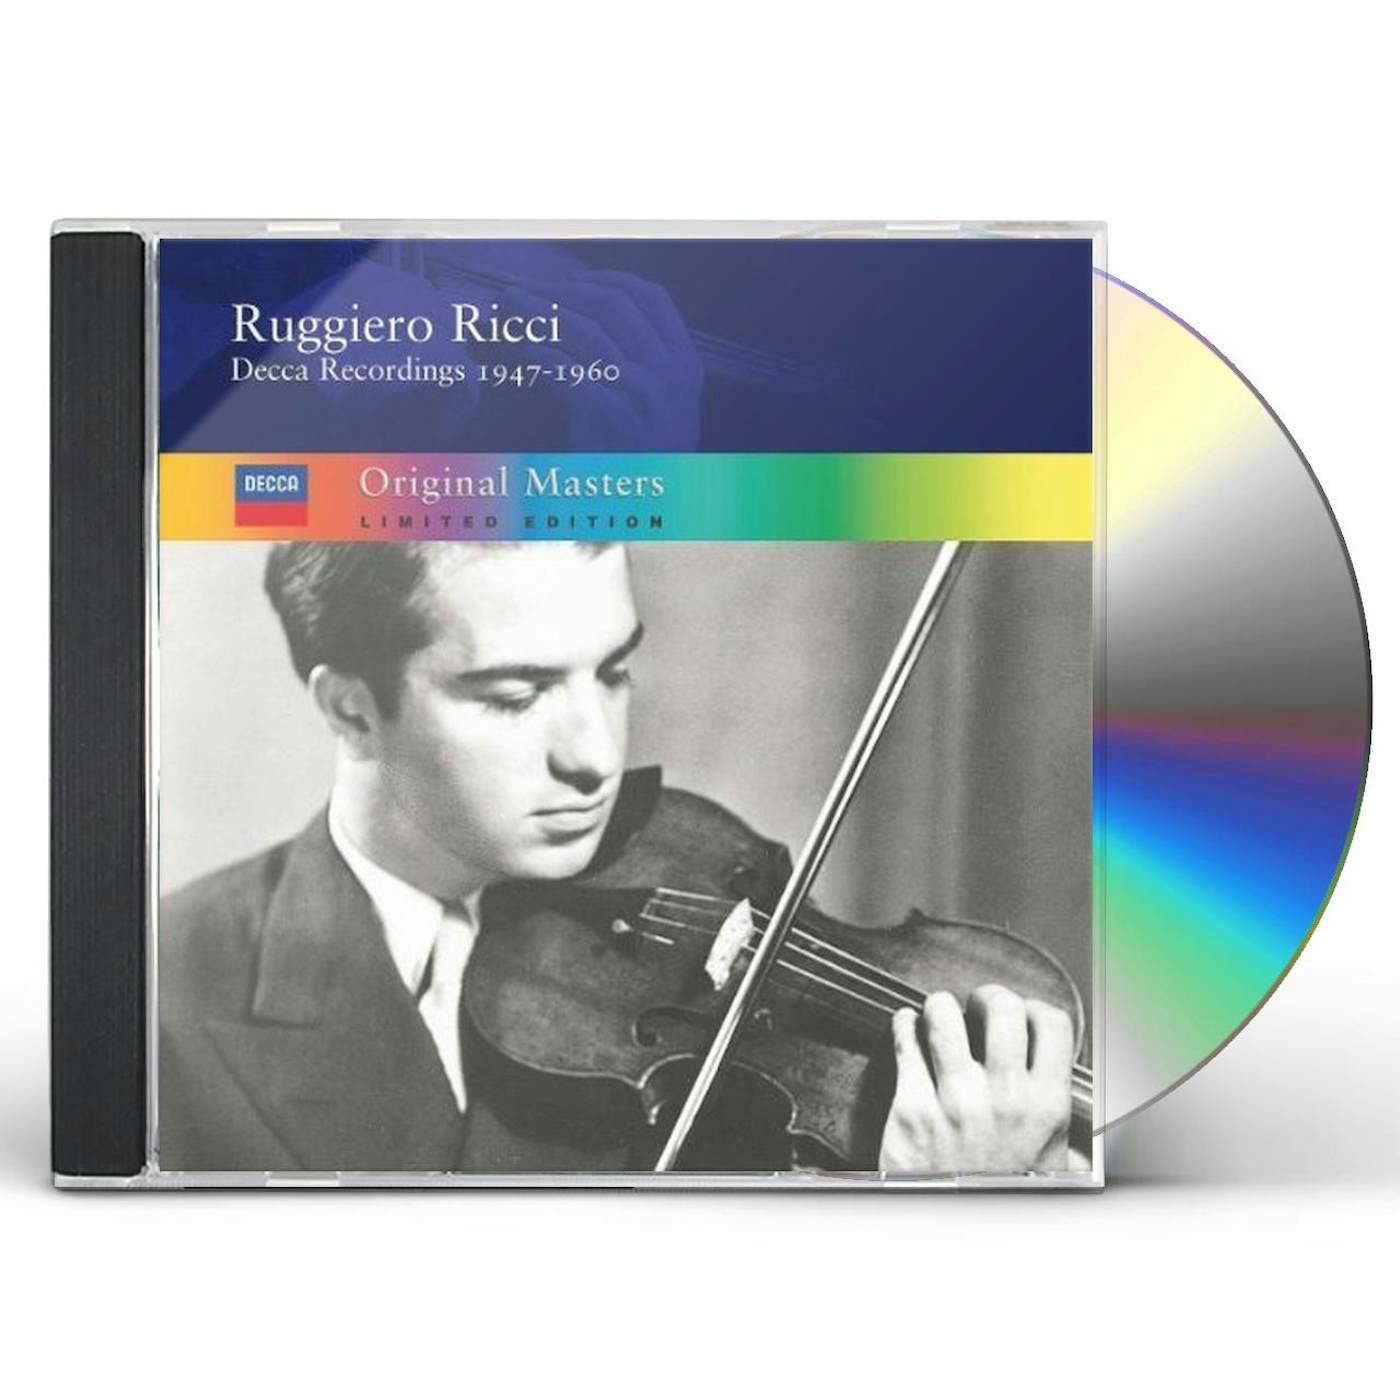 Ruggiero Ricci DECCA RECORDINGS 1950-1960 CD